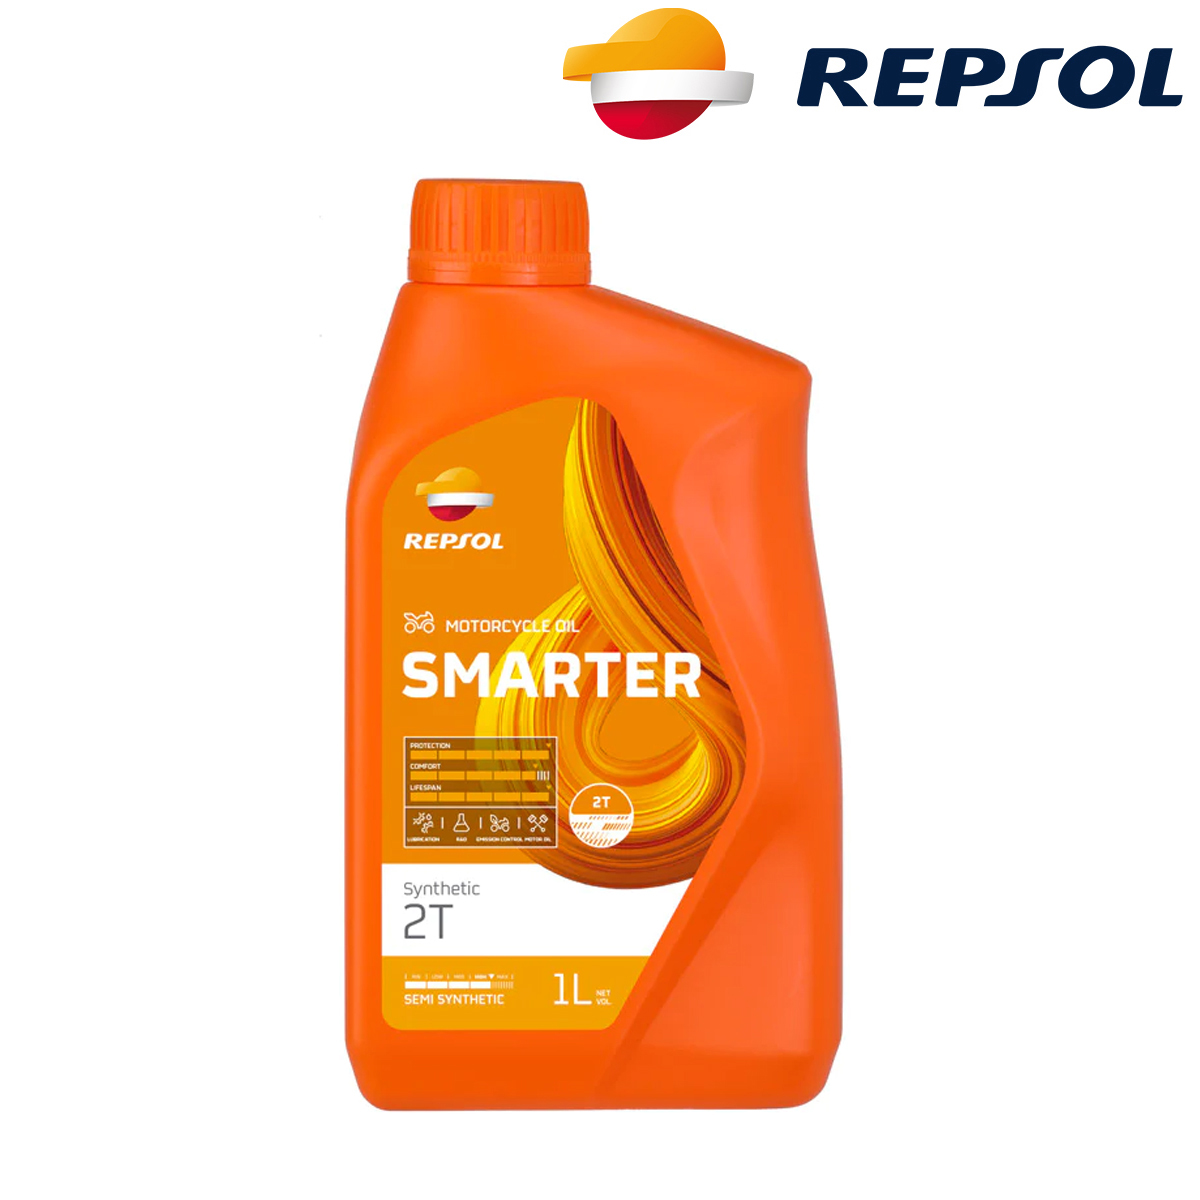 Motorno ulje - ulje za motore Repsol Smarter Synthetic 2T 1l RPP2120ZHC